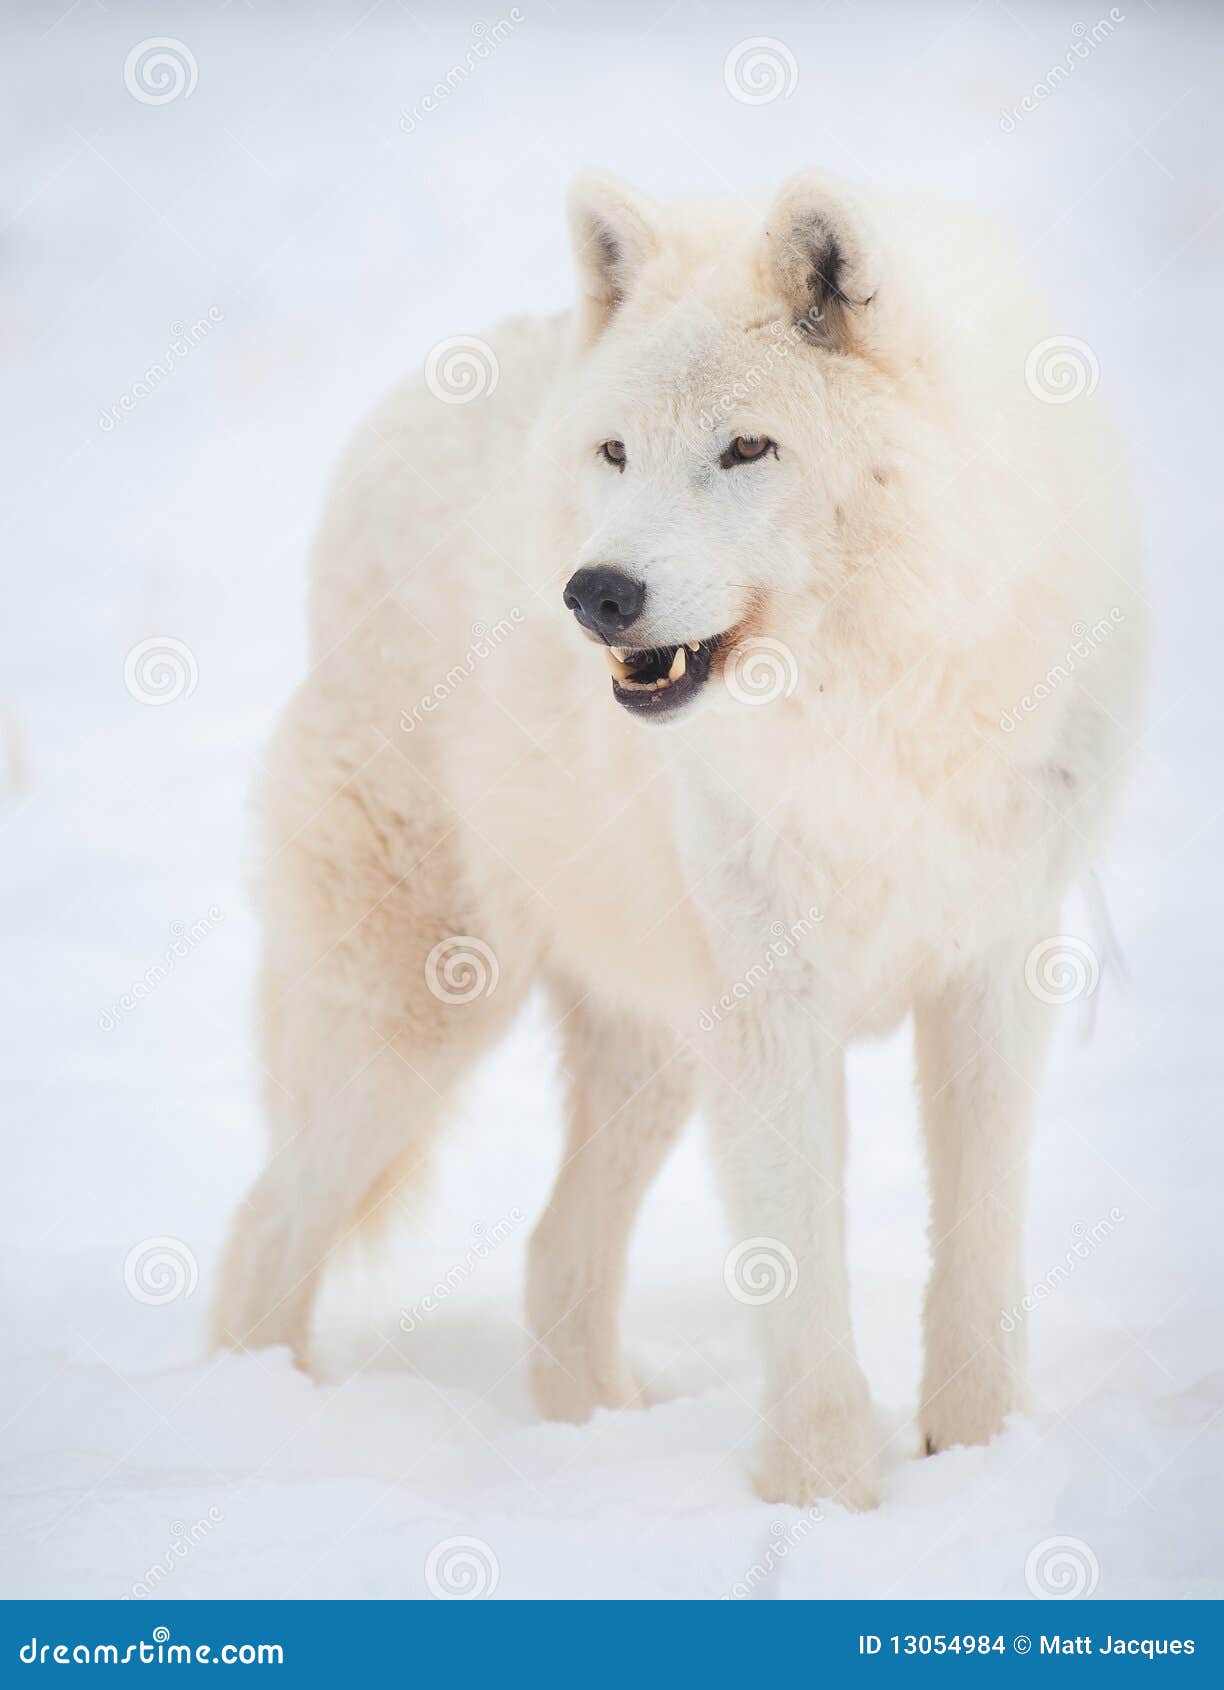 arctic wolf (canis lupus arctos) in snow.